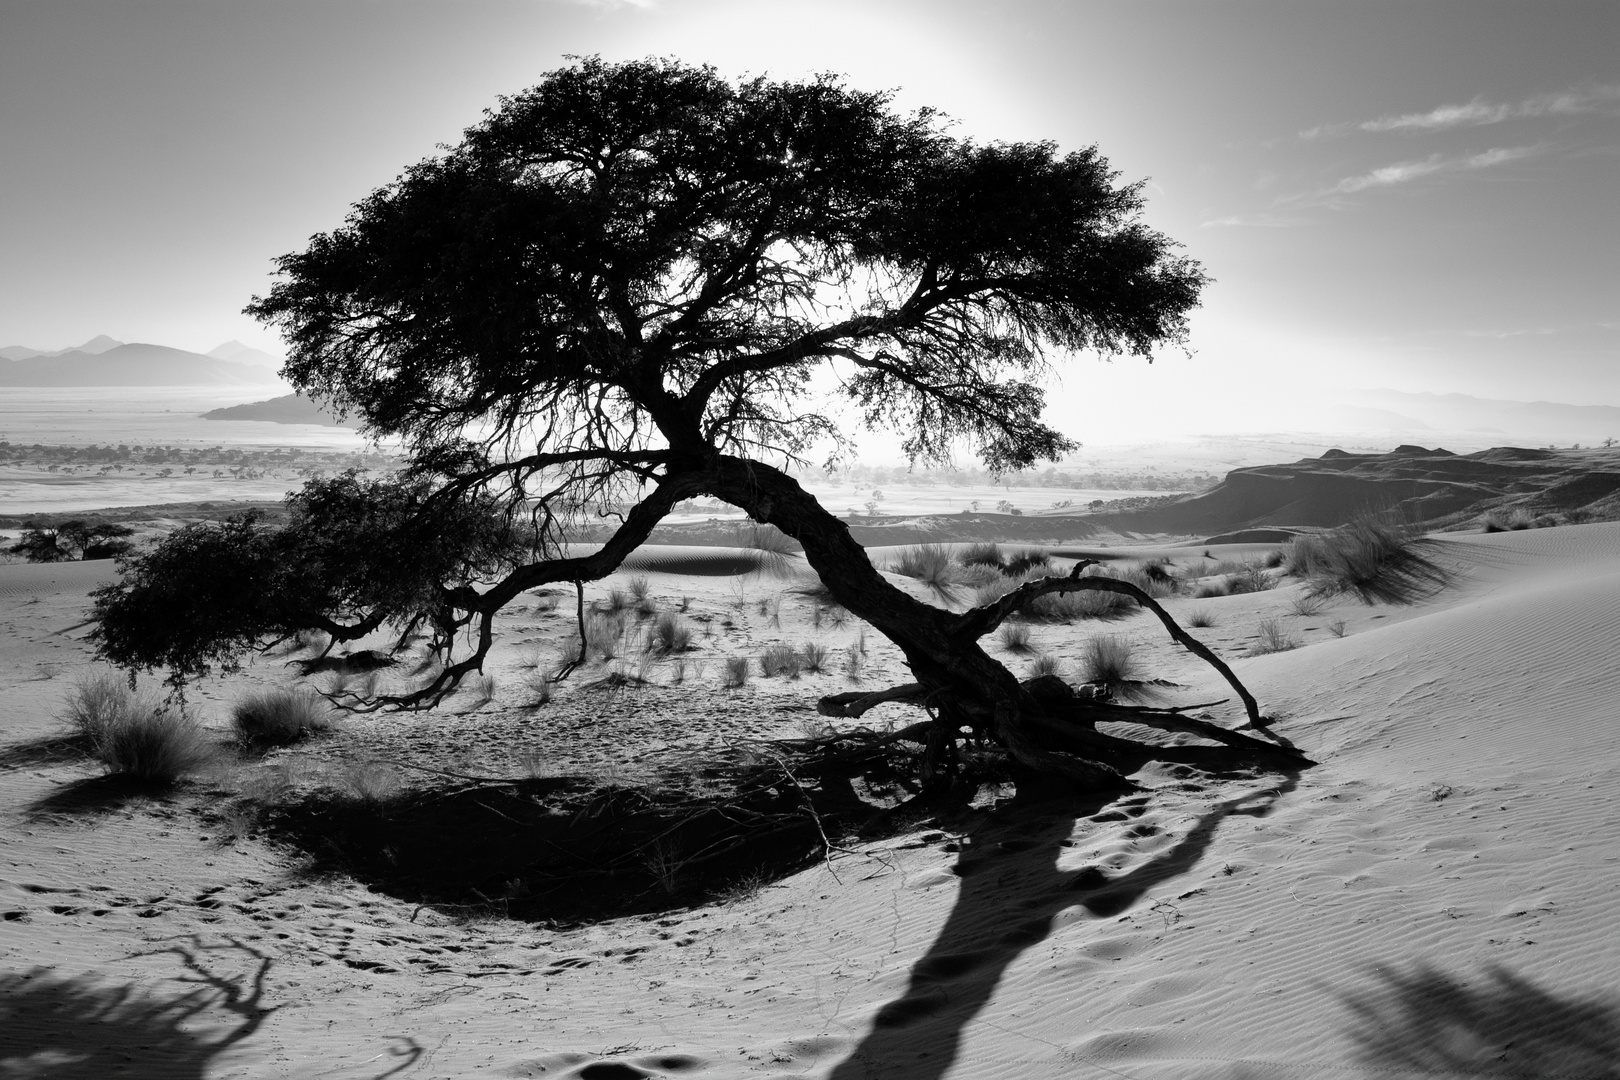 Baum in der Wüste